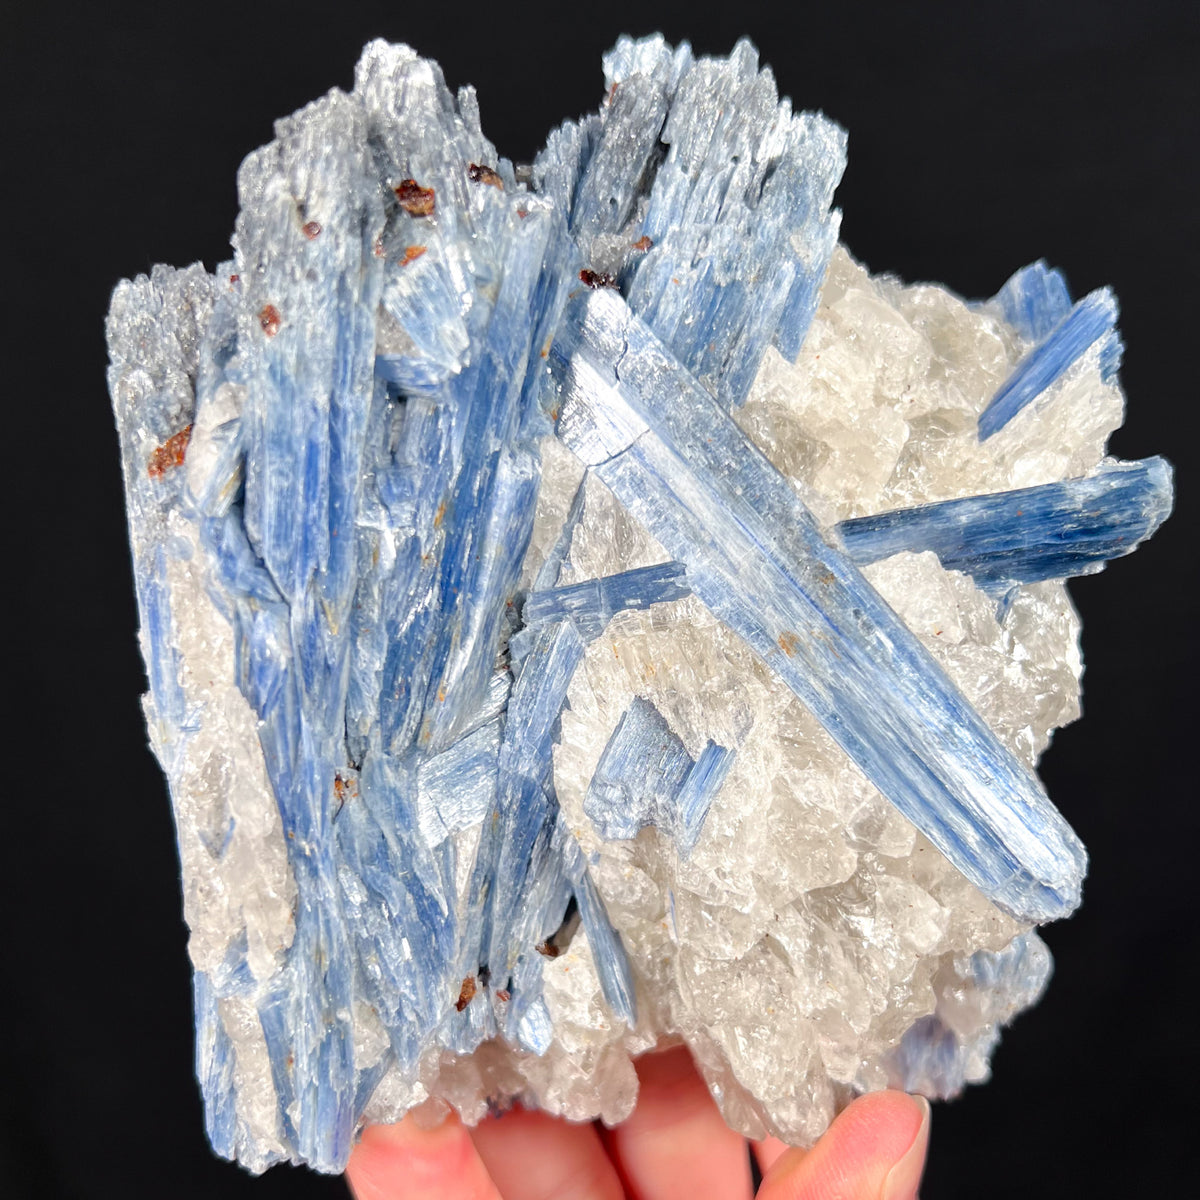 Blue Kyanite Crystals in Quartz with Staurolite